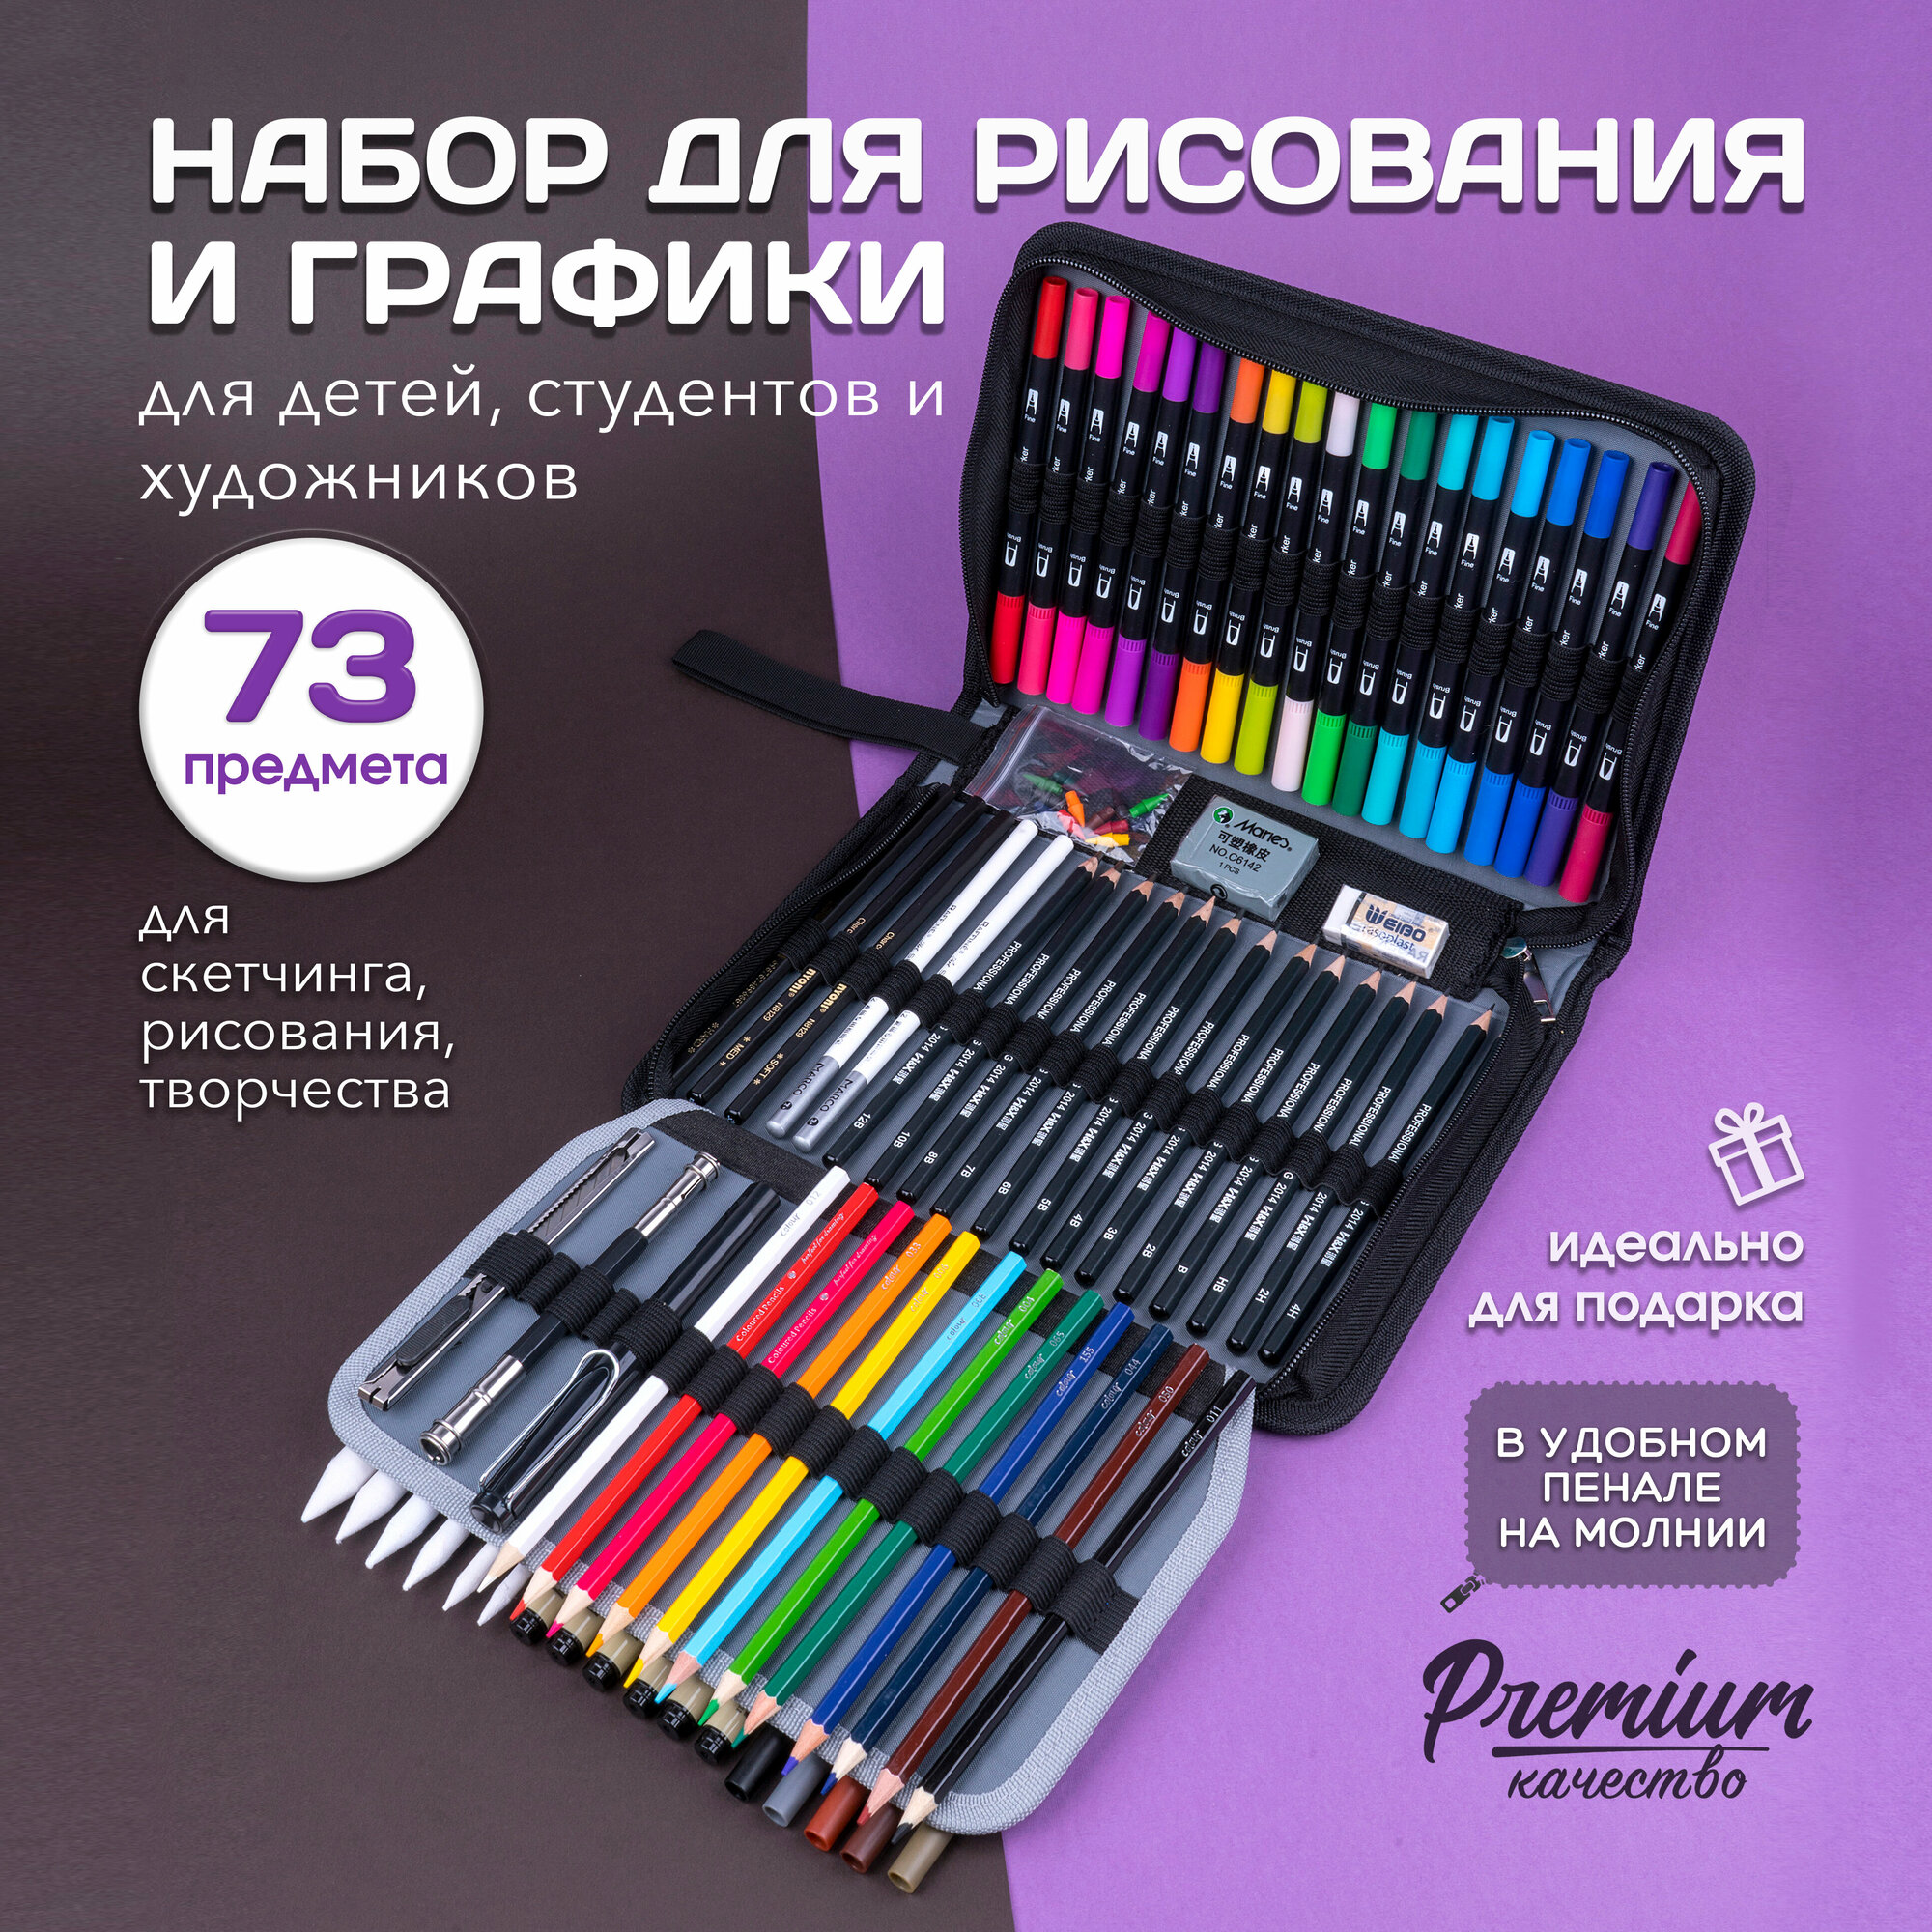 Подарочный набор линеров карандашей и профессиональных для рисования и творчества 73 шт